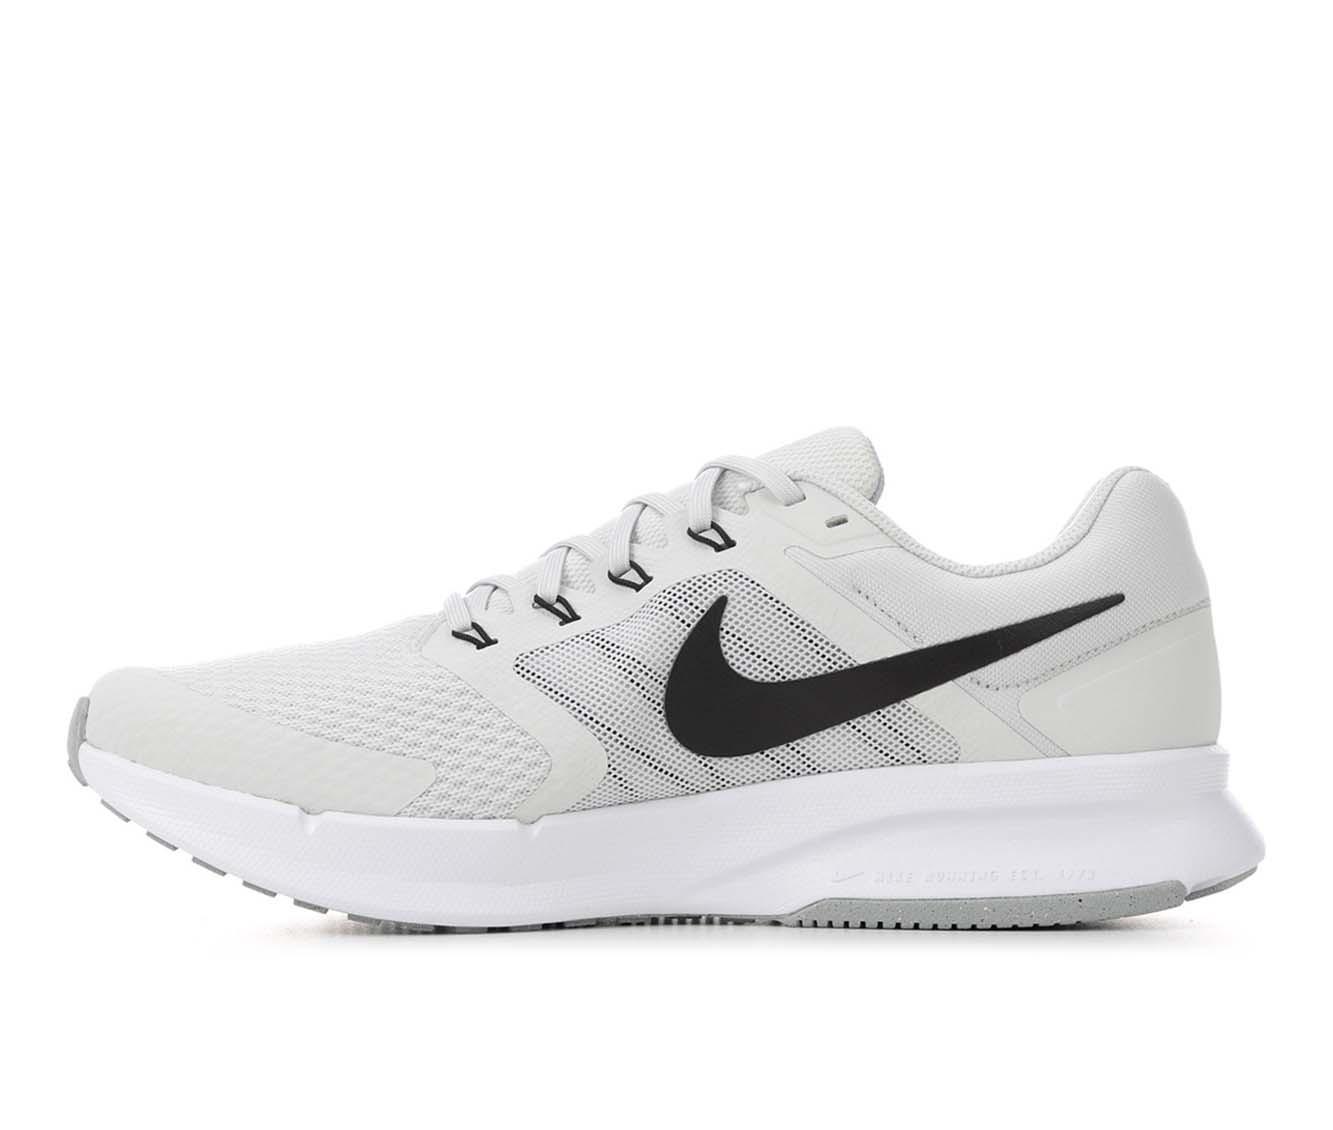 Nike Men's Run Swift 3 Running Shoes